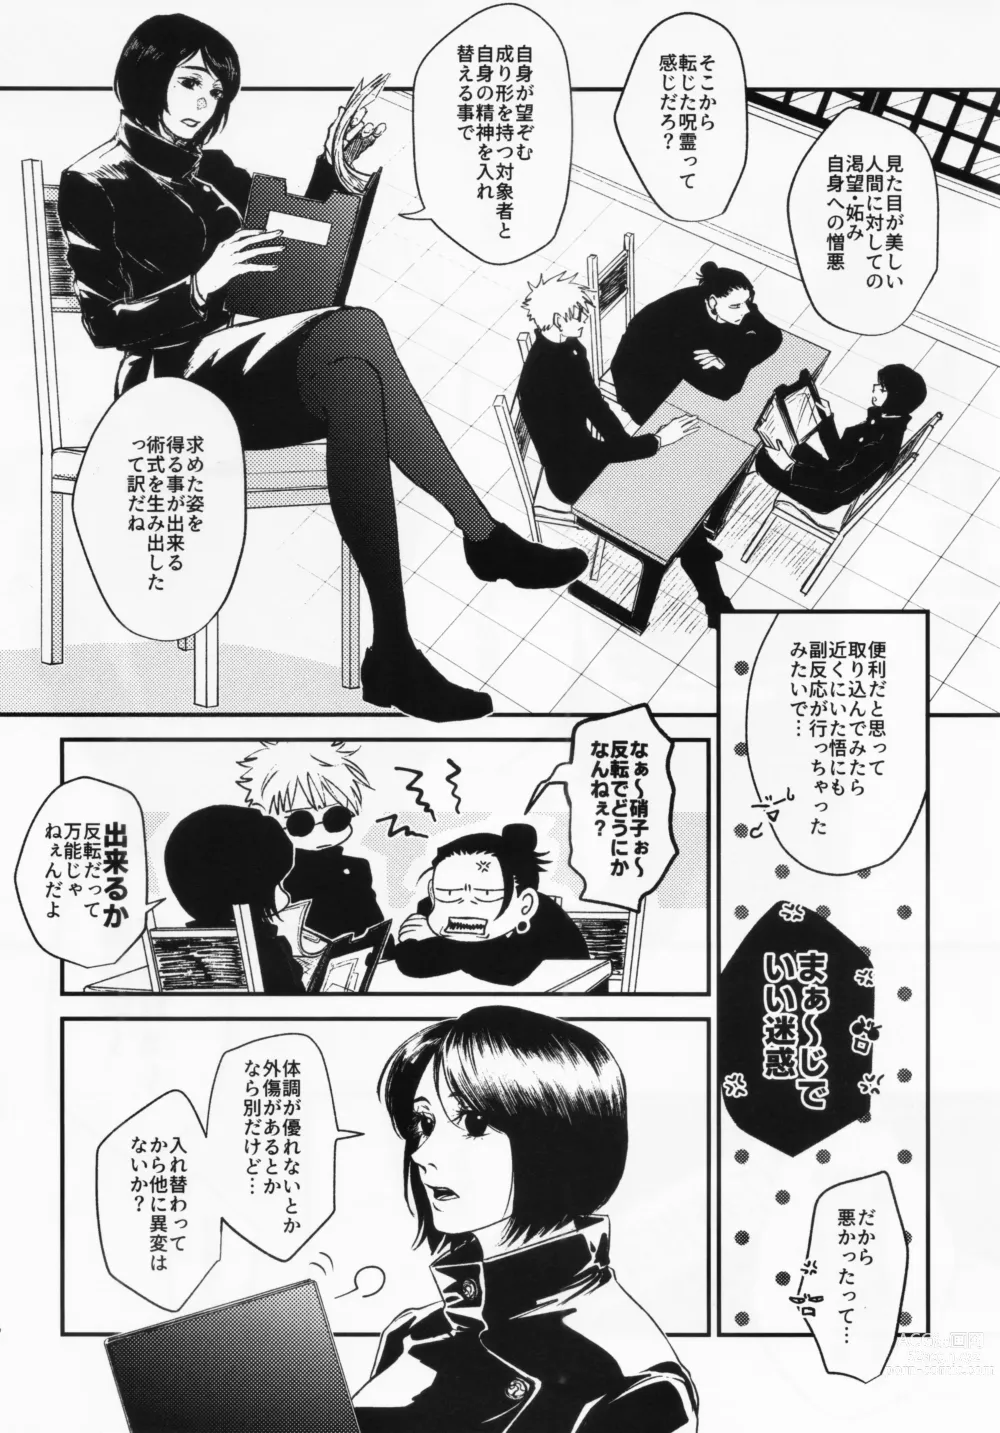 Page 5 of doujinshi Surussho.